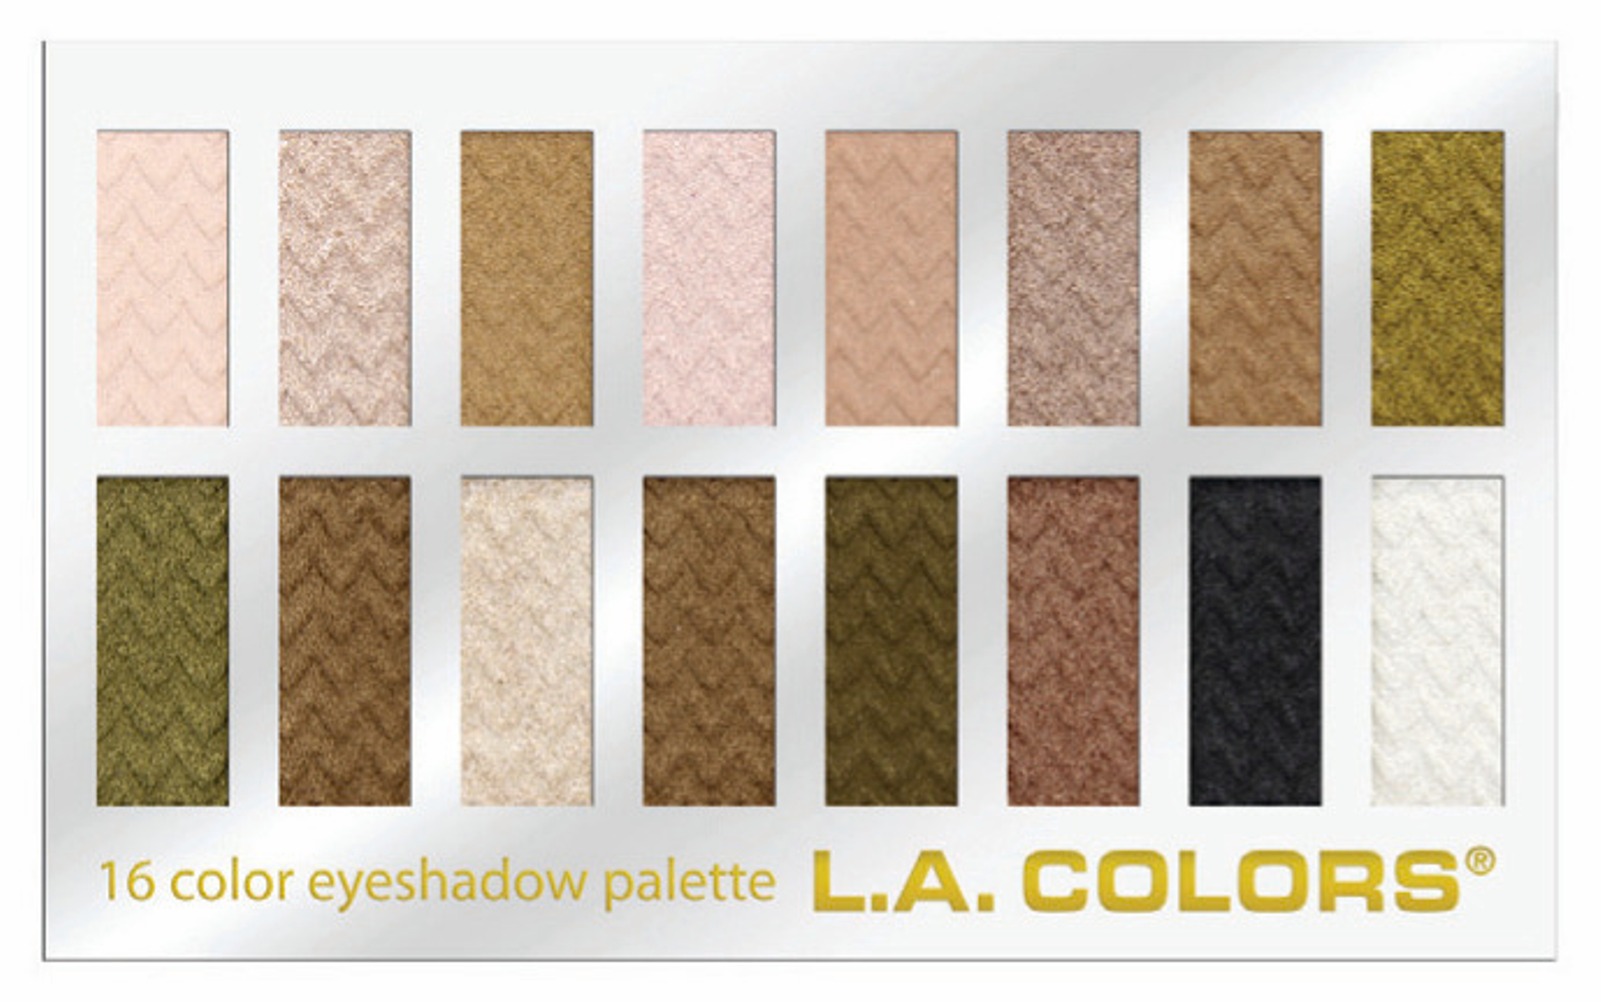 L.A. Colors 16 Color Eyeshadow Palette - Sweet  0.95 fl oz  27 g